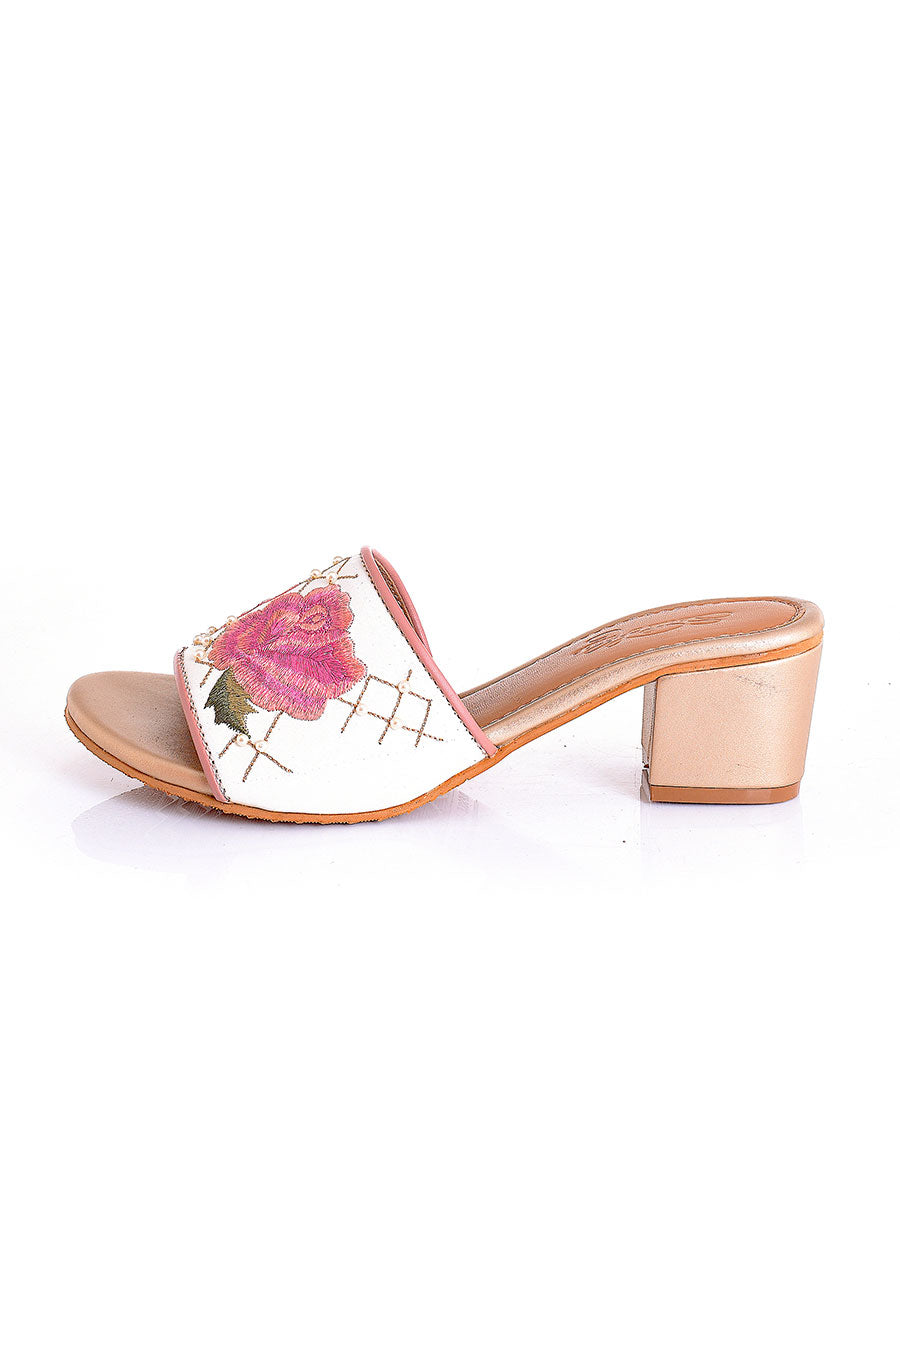 Fiona Pink & Creme Heel Sandals